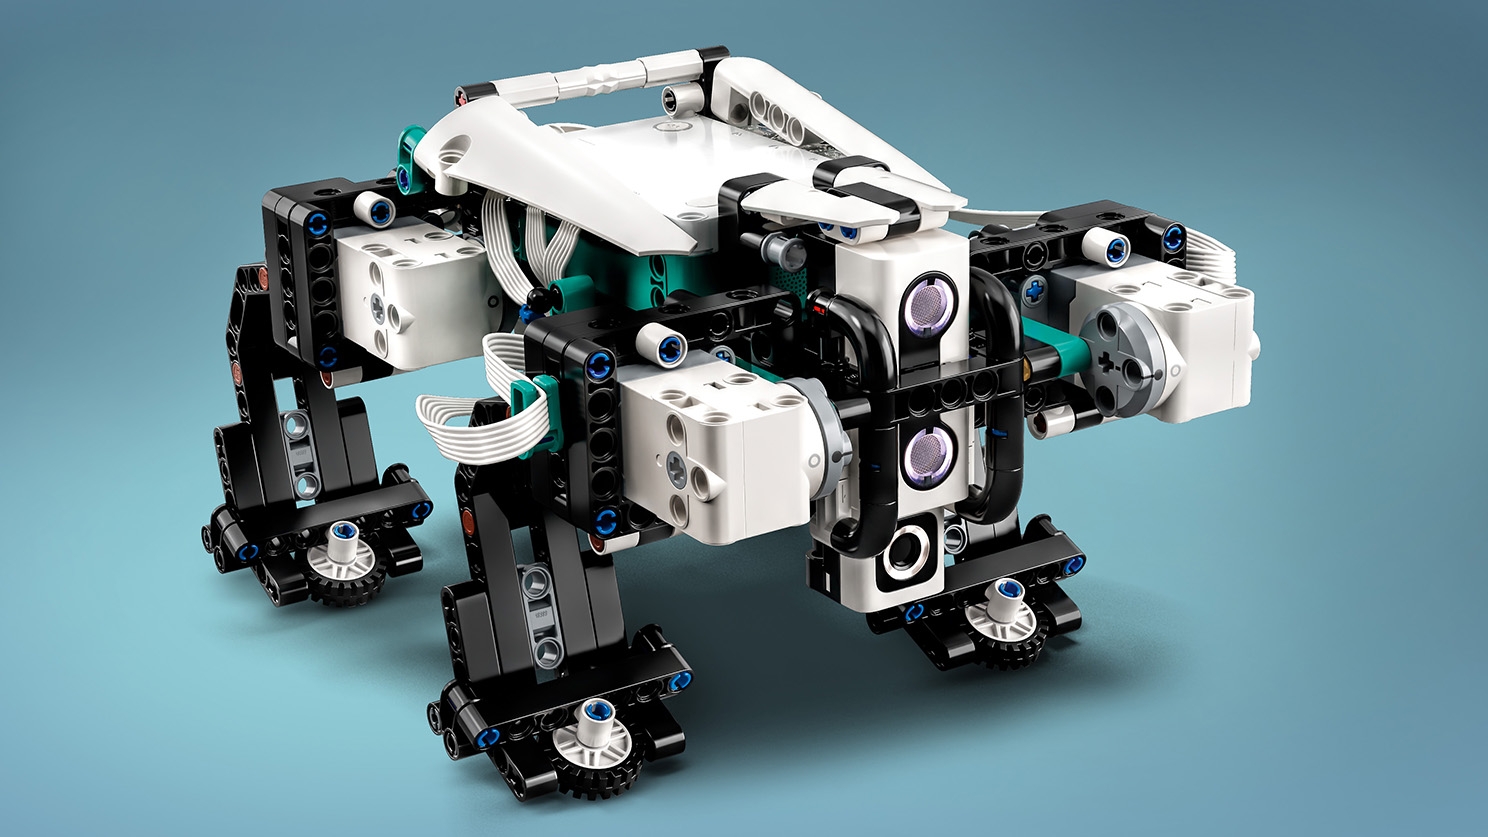 Robot Inventor - MINDSTORMS® Sets - LEGO.com for kids